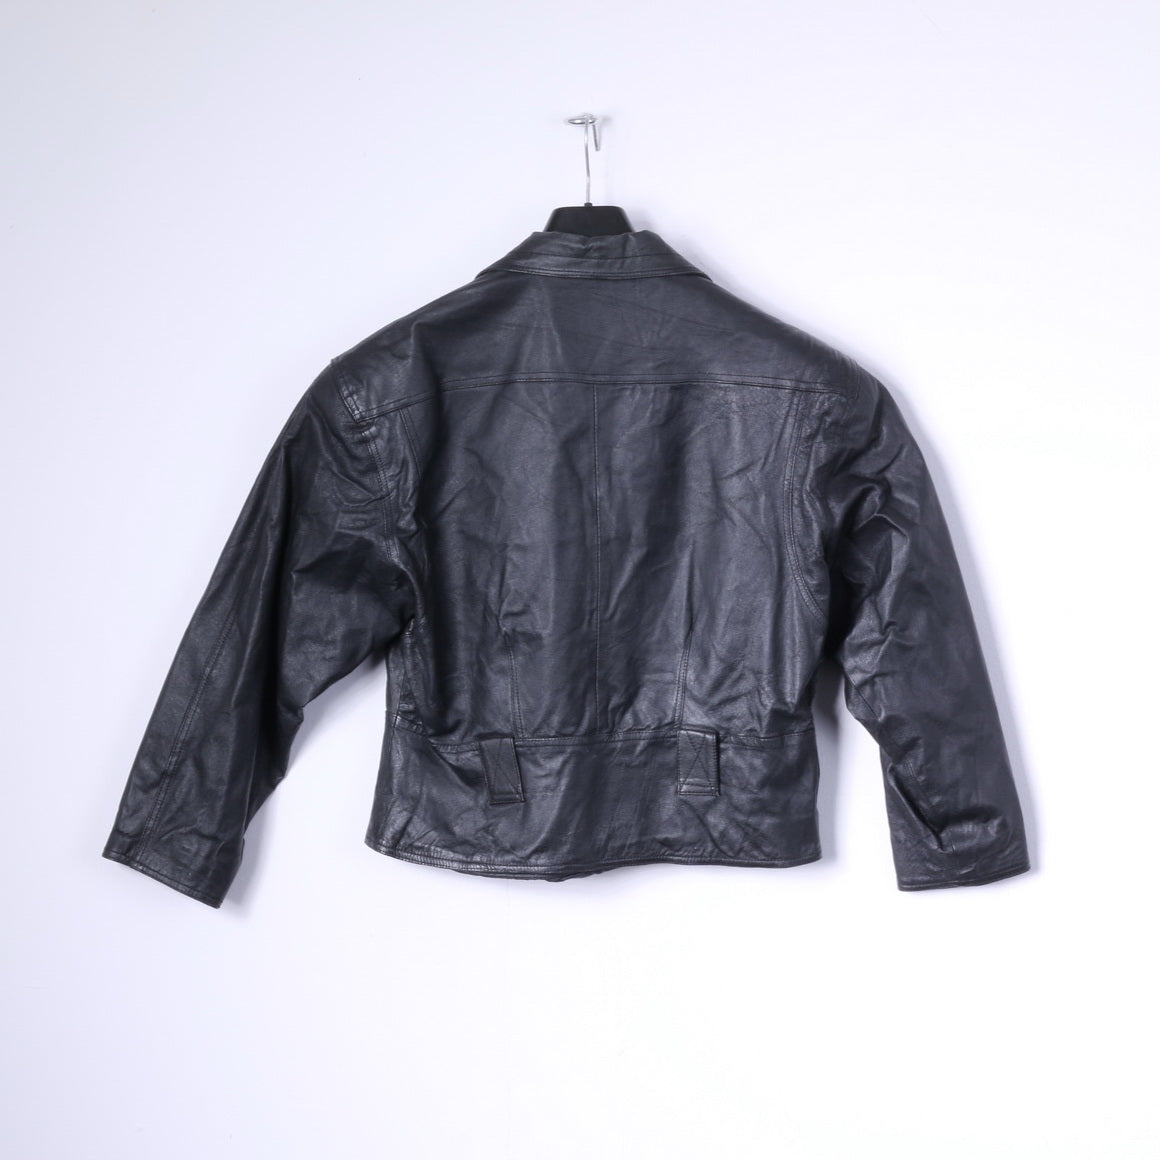 Miss Joy Women 38 M Jacket Black Leather Biker Cropped Snaps Vintage Shoulder Pads Top